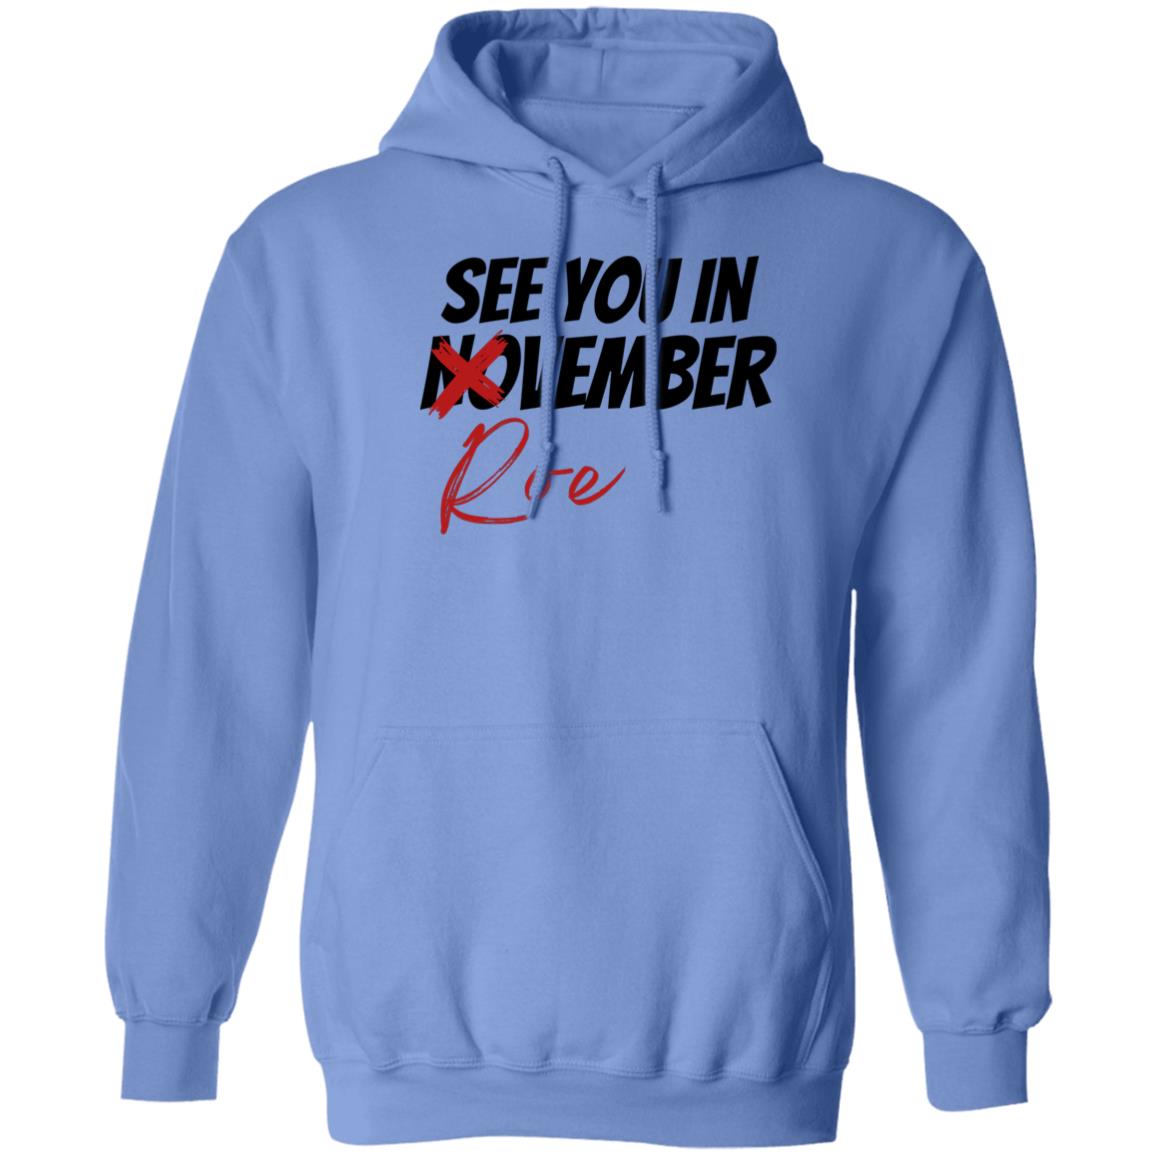 See You In Roevember Hooded Sweatshirt